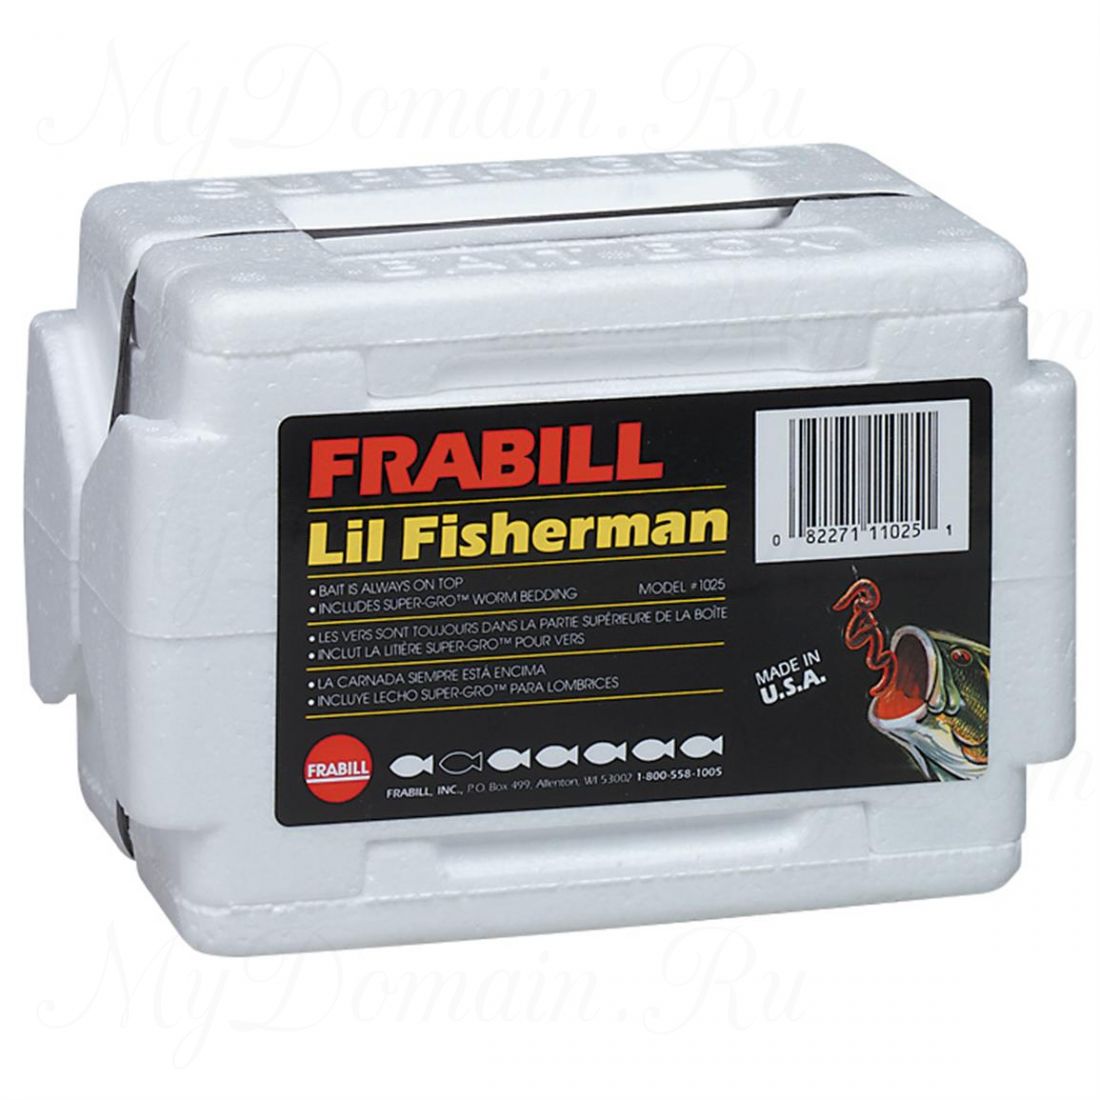 Контейнер двойной Frabill LIL' Fisherman worm Tote для хранения живых приманок до 2 порций с Super-Gro беддингом